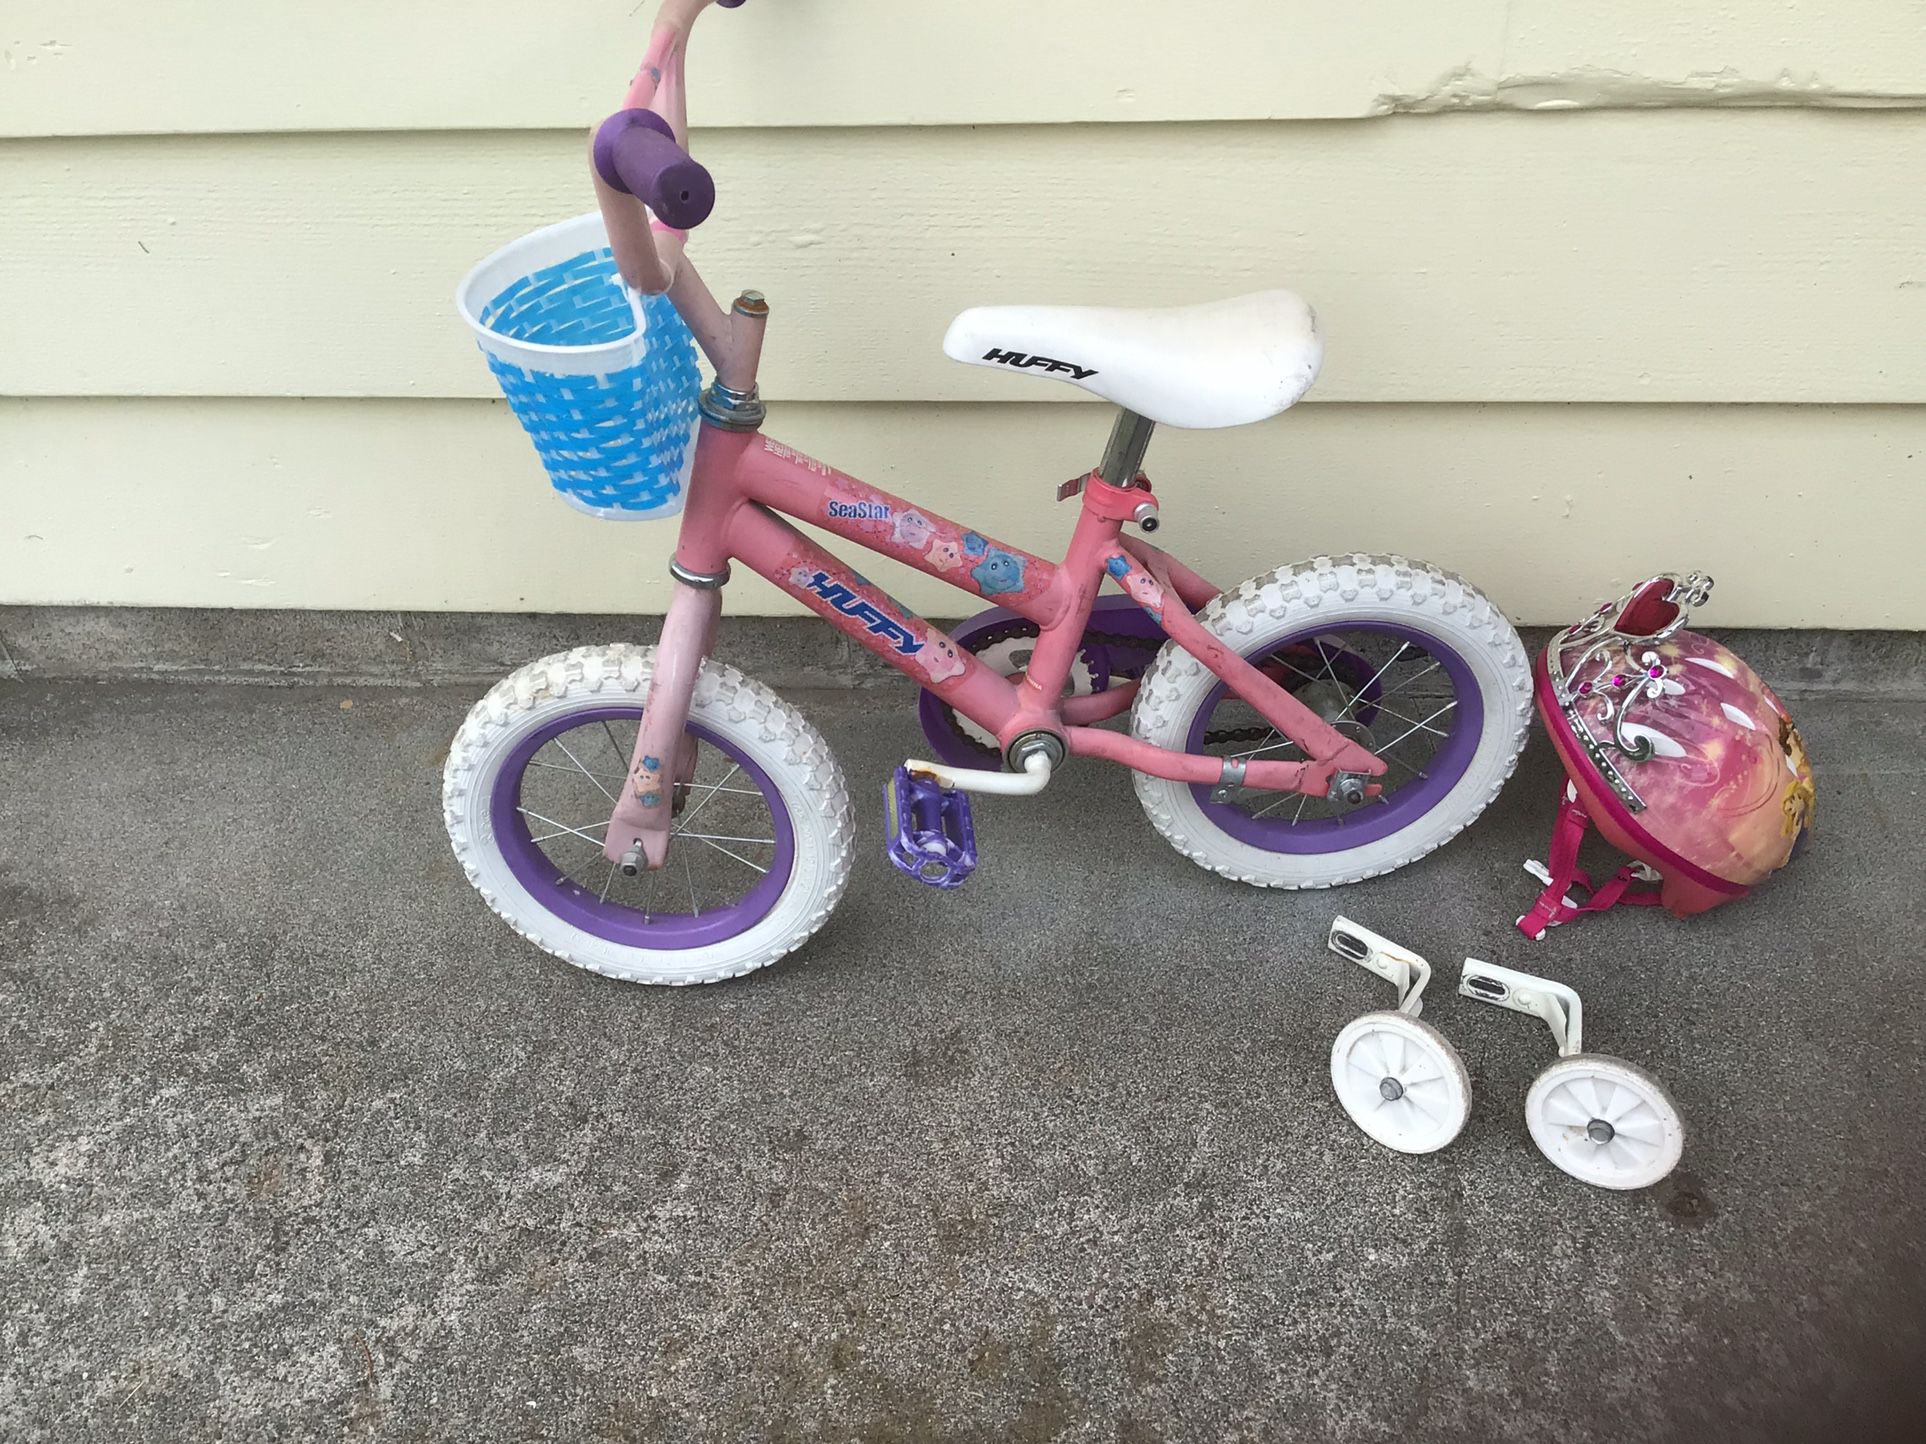 Girls Kids Bike